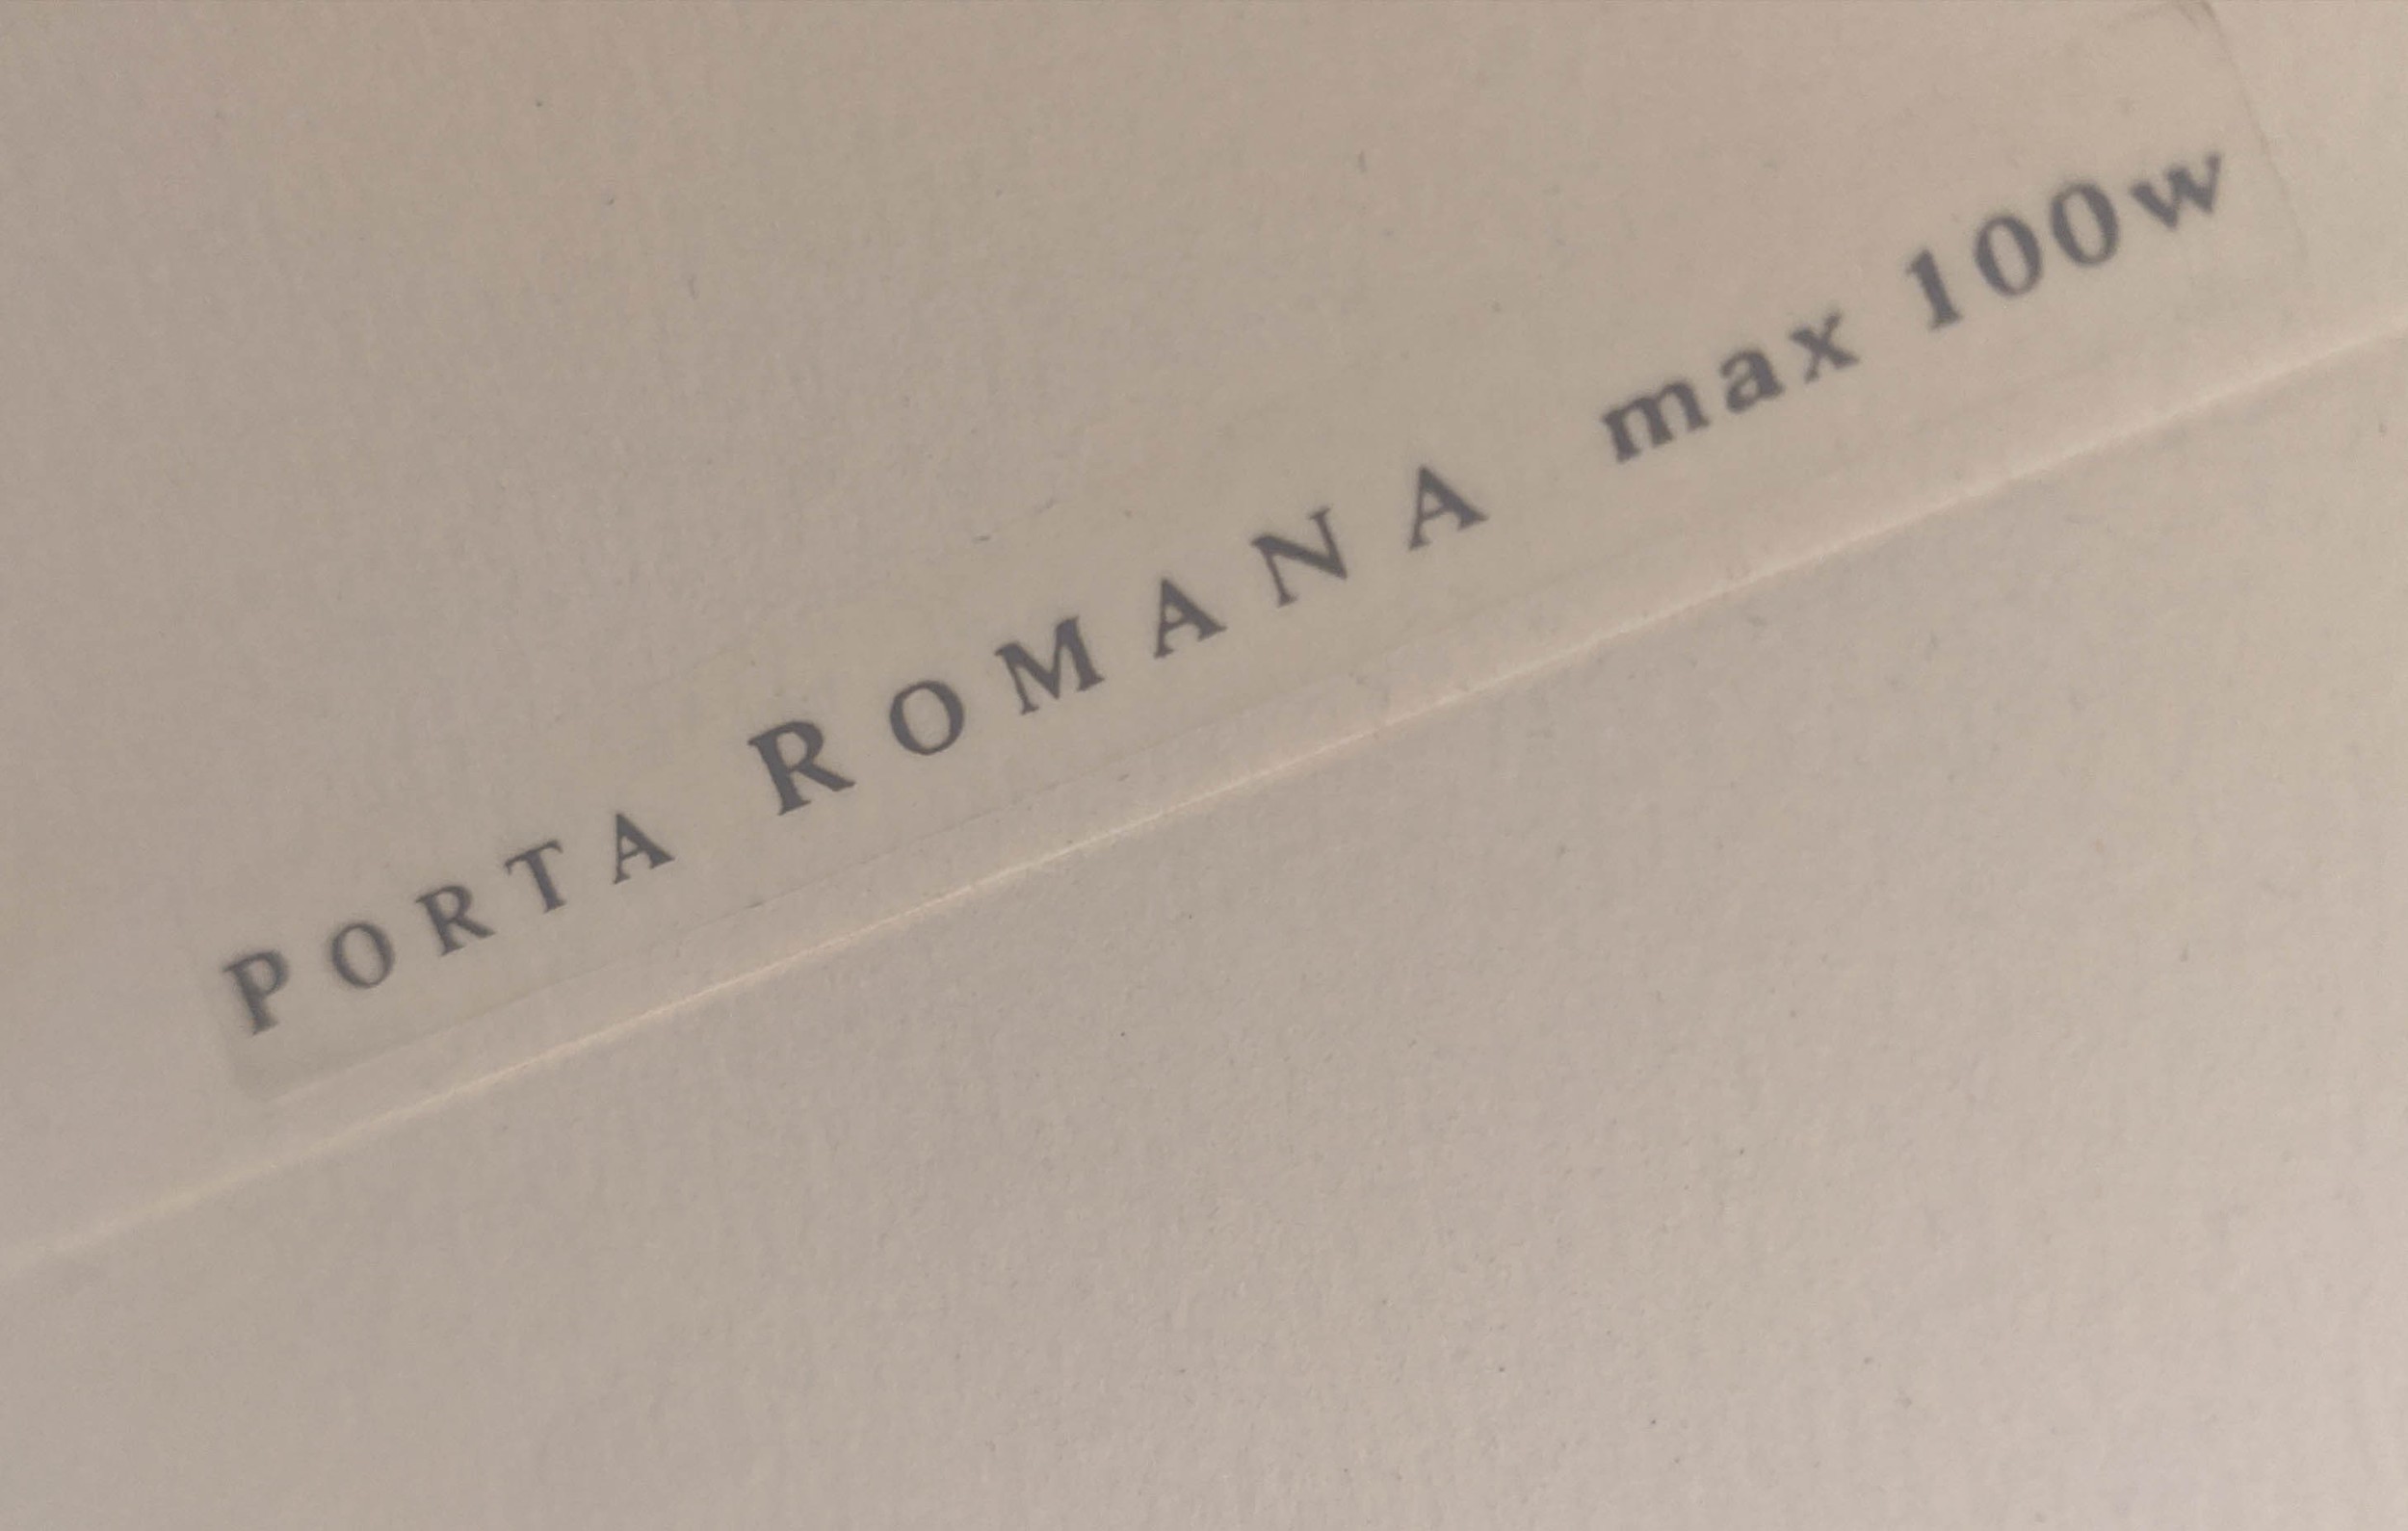 PORTA ROMANA READING FLOOR LAMP, 133cm H. - Bild 6 aus 6